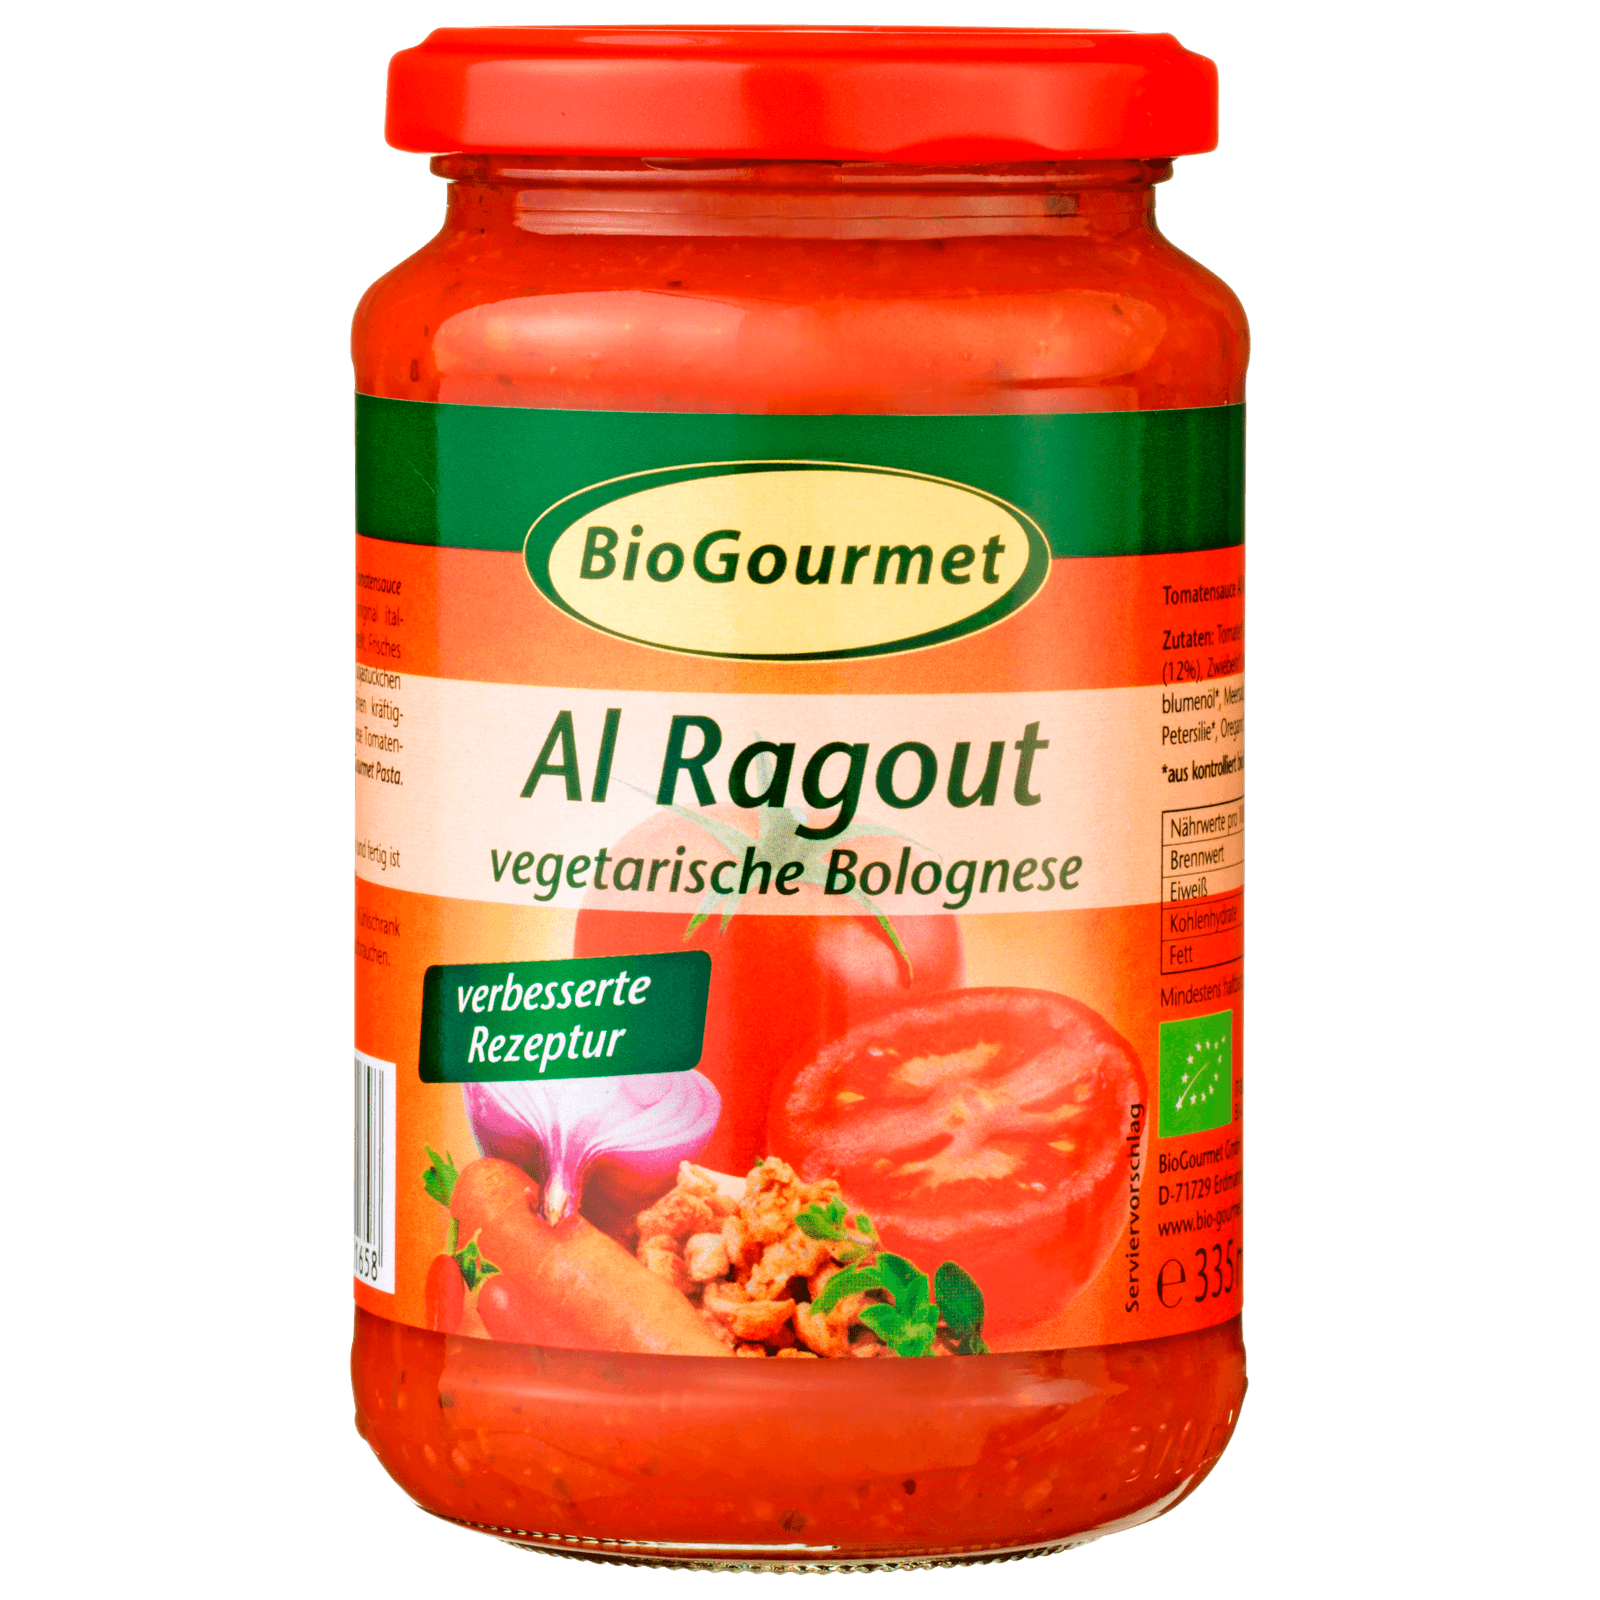 BioGourmet Bio Tomatensauce Al Ragout 350g  für 3.29 EUR